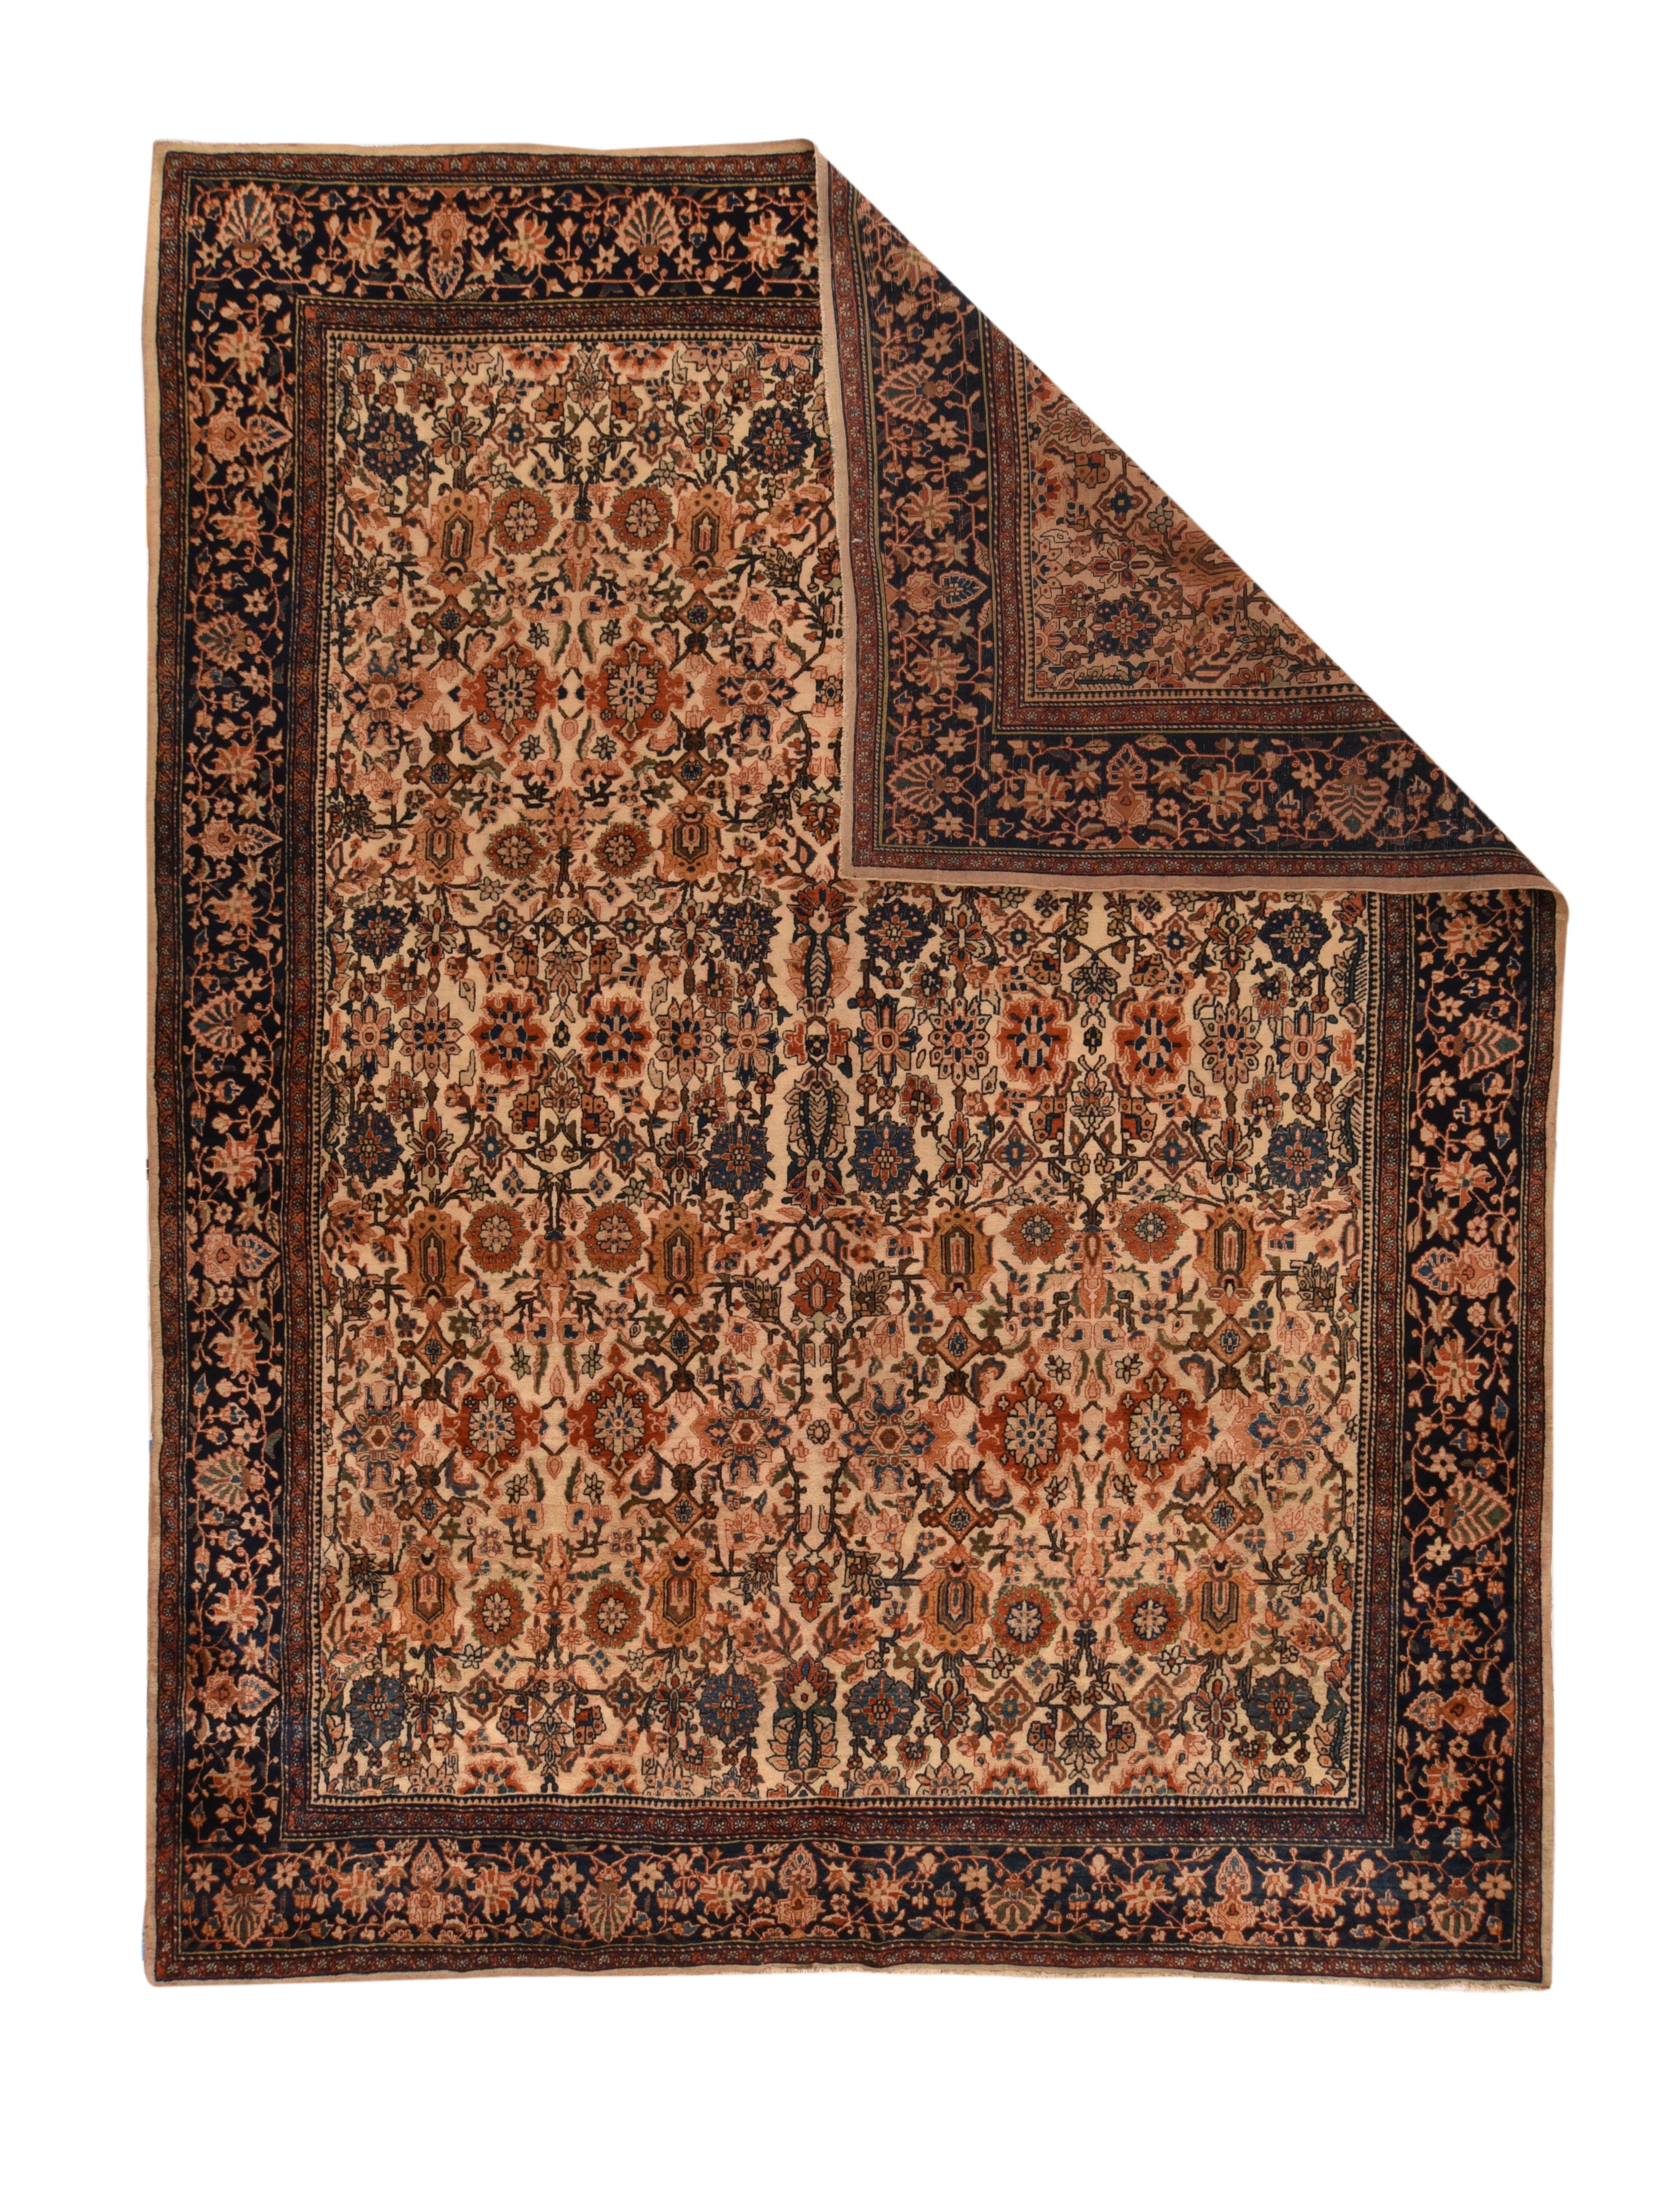 Antique Farahan Sarouk rug measures: 8'11'' x 11'8''.